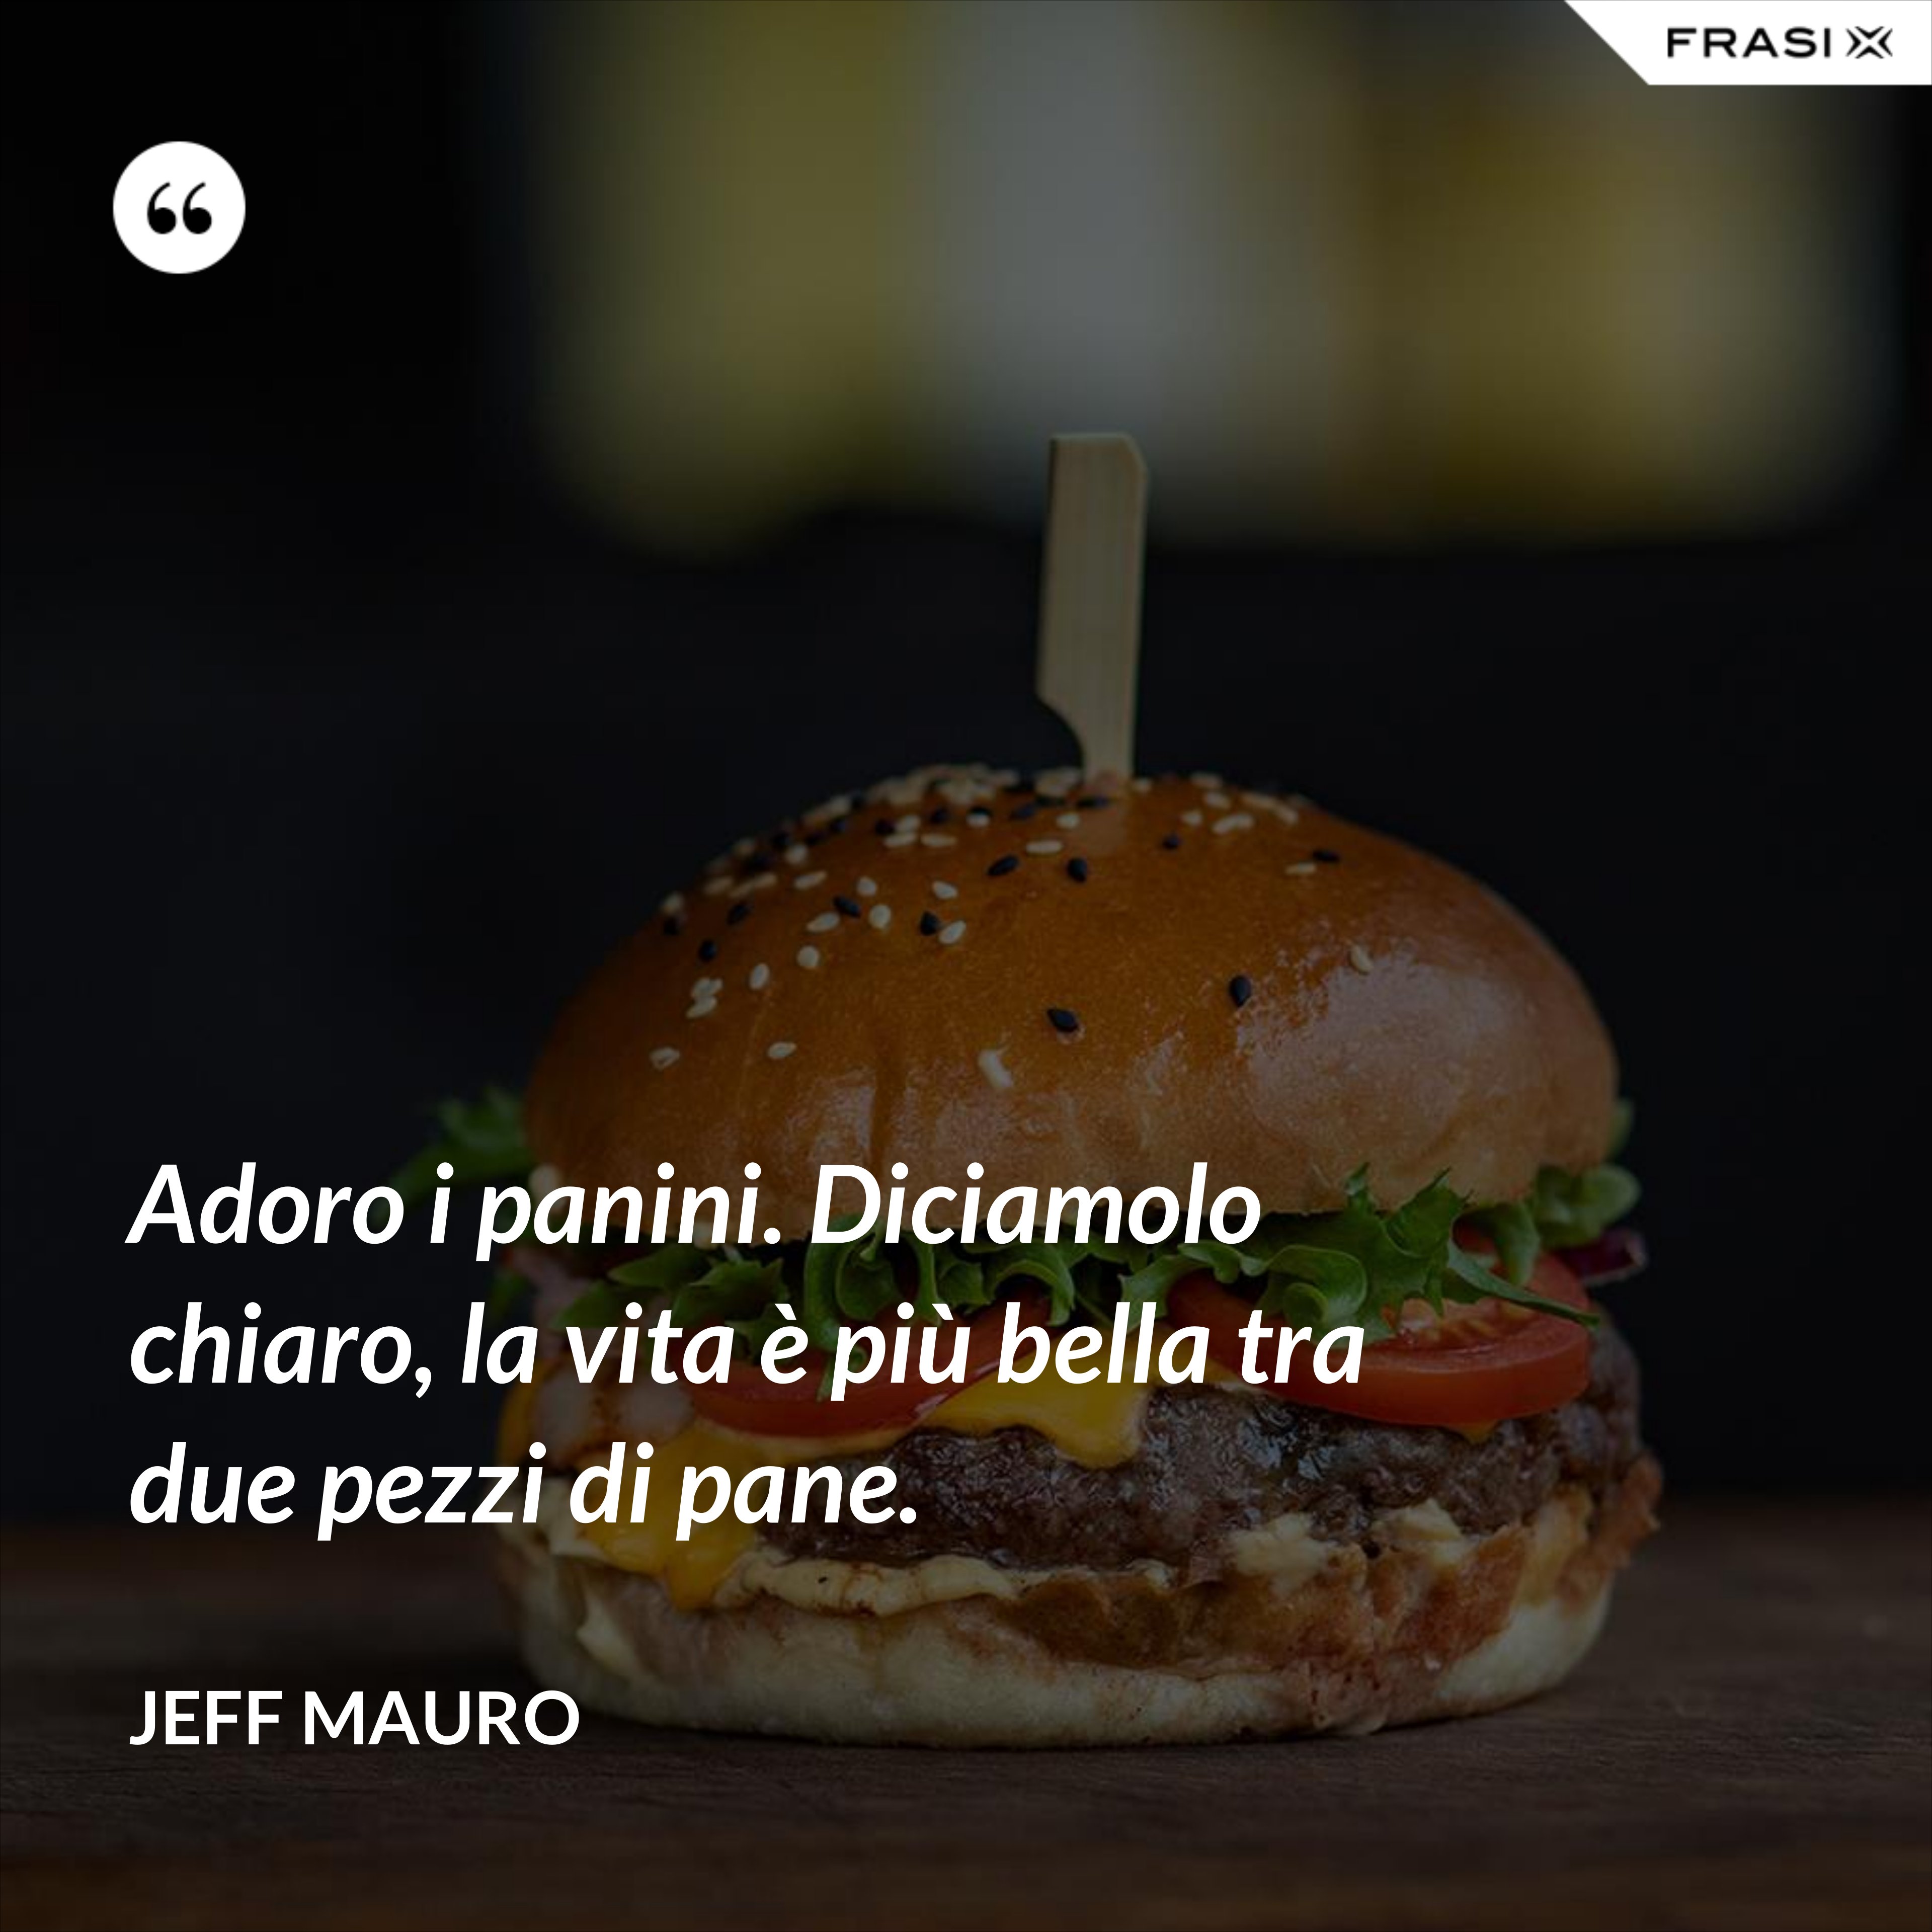 Adoro i panini. Diciamolo chiaro, la vita è più bella tra due pezzi di pane. - Jeff Mauro